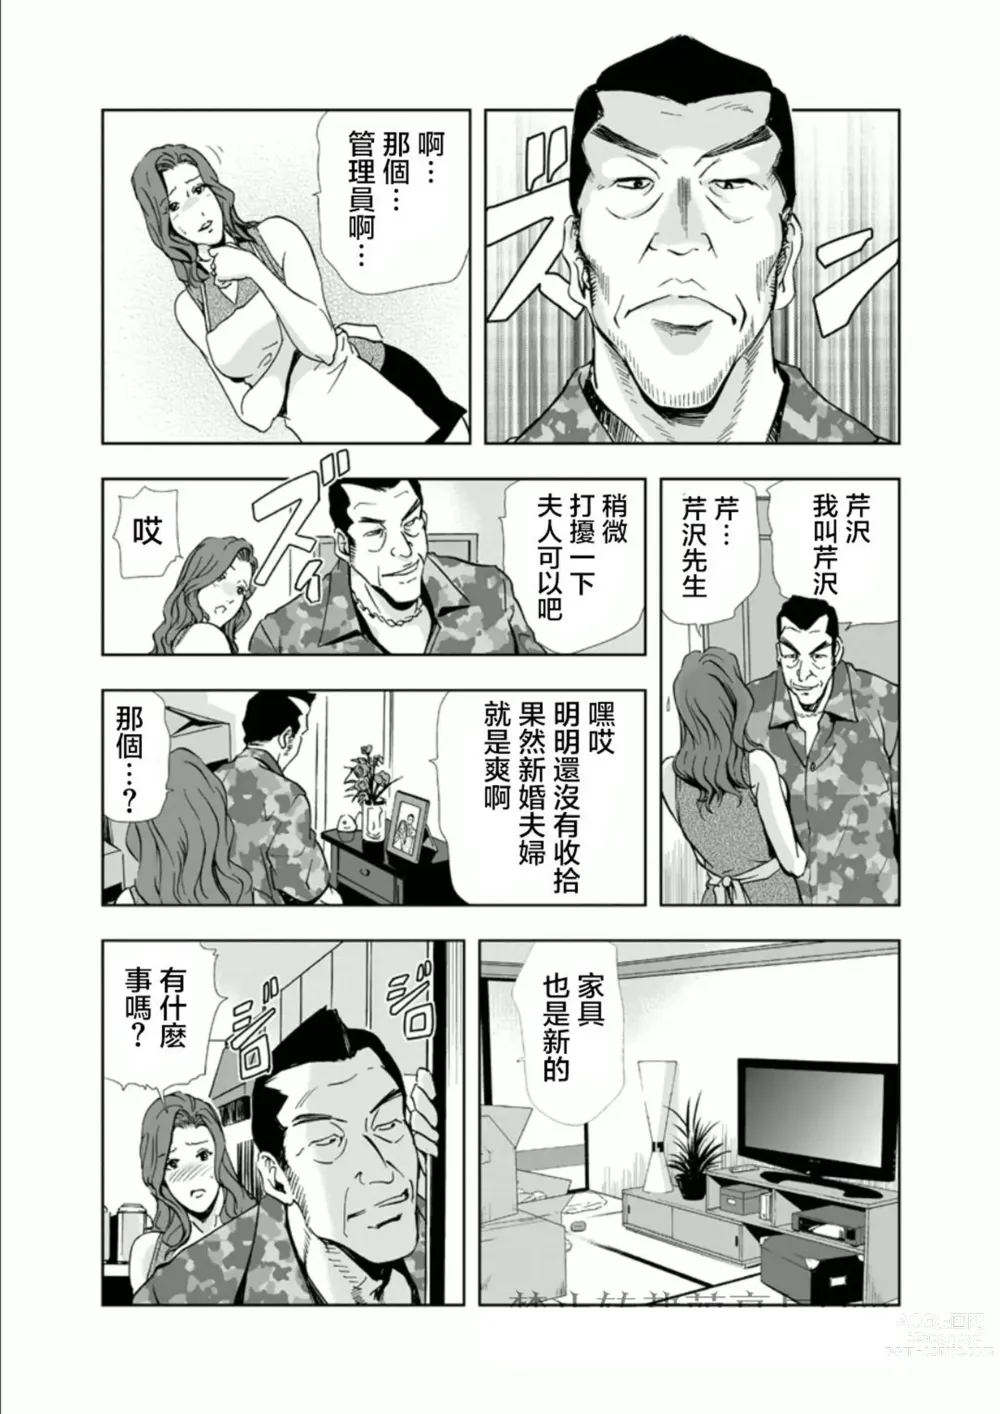 Page 5 of manga Netorare 1